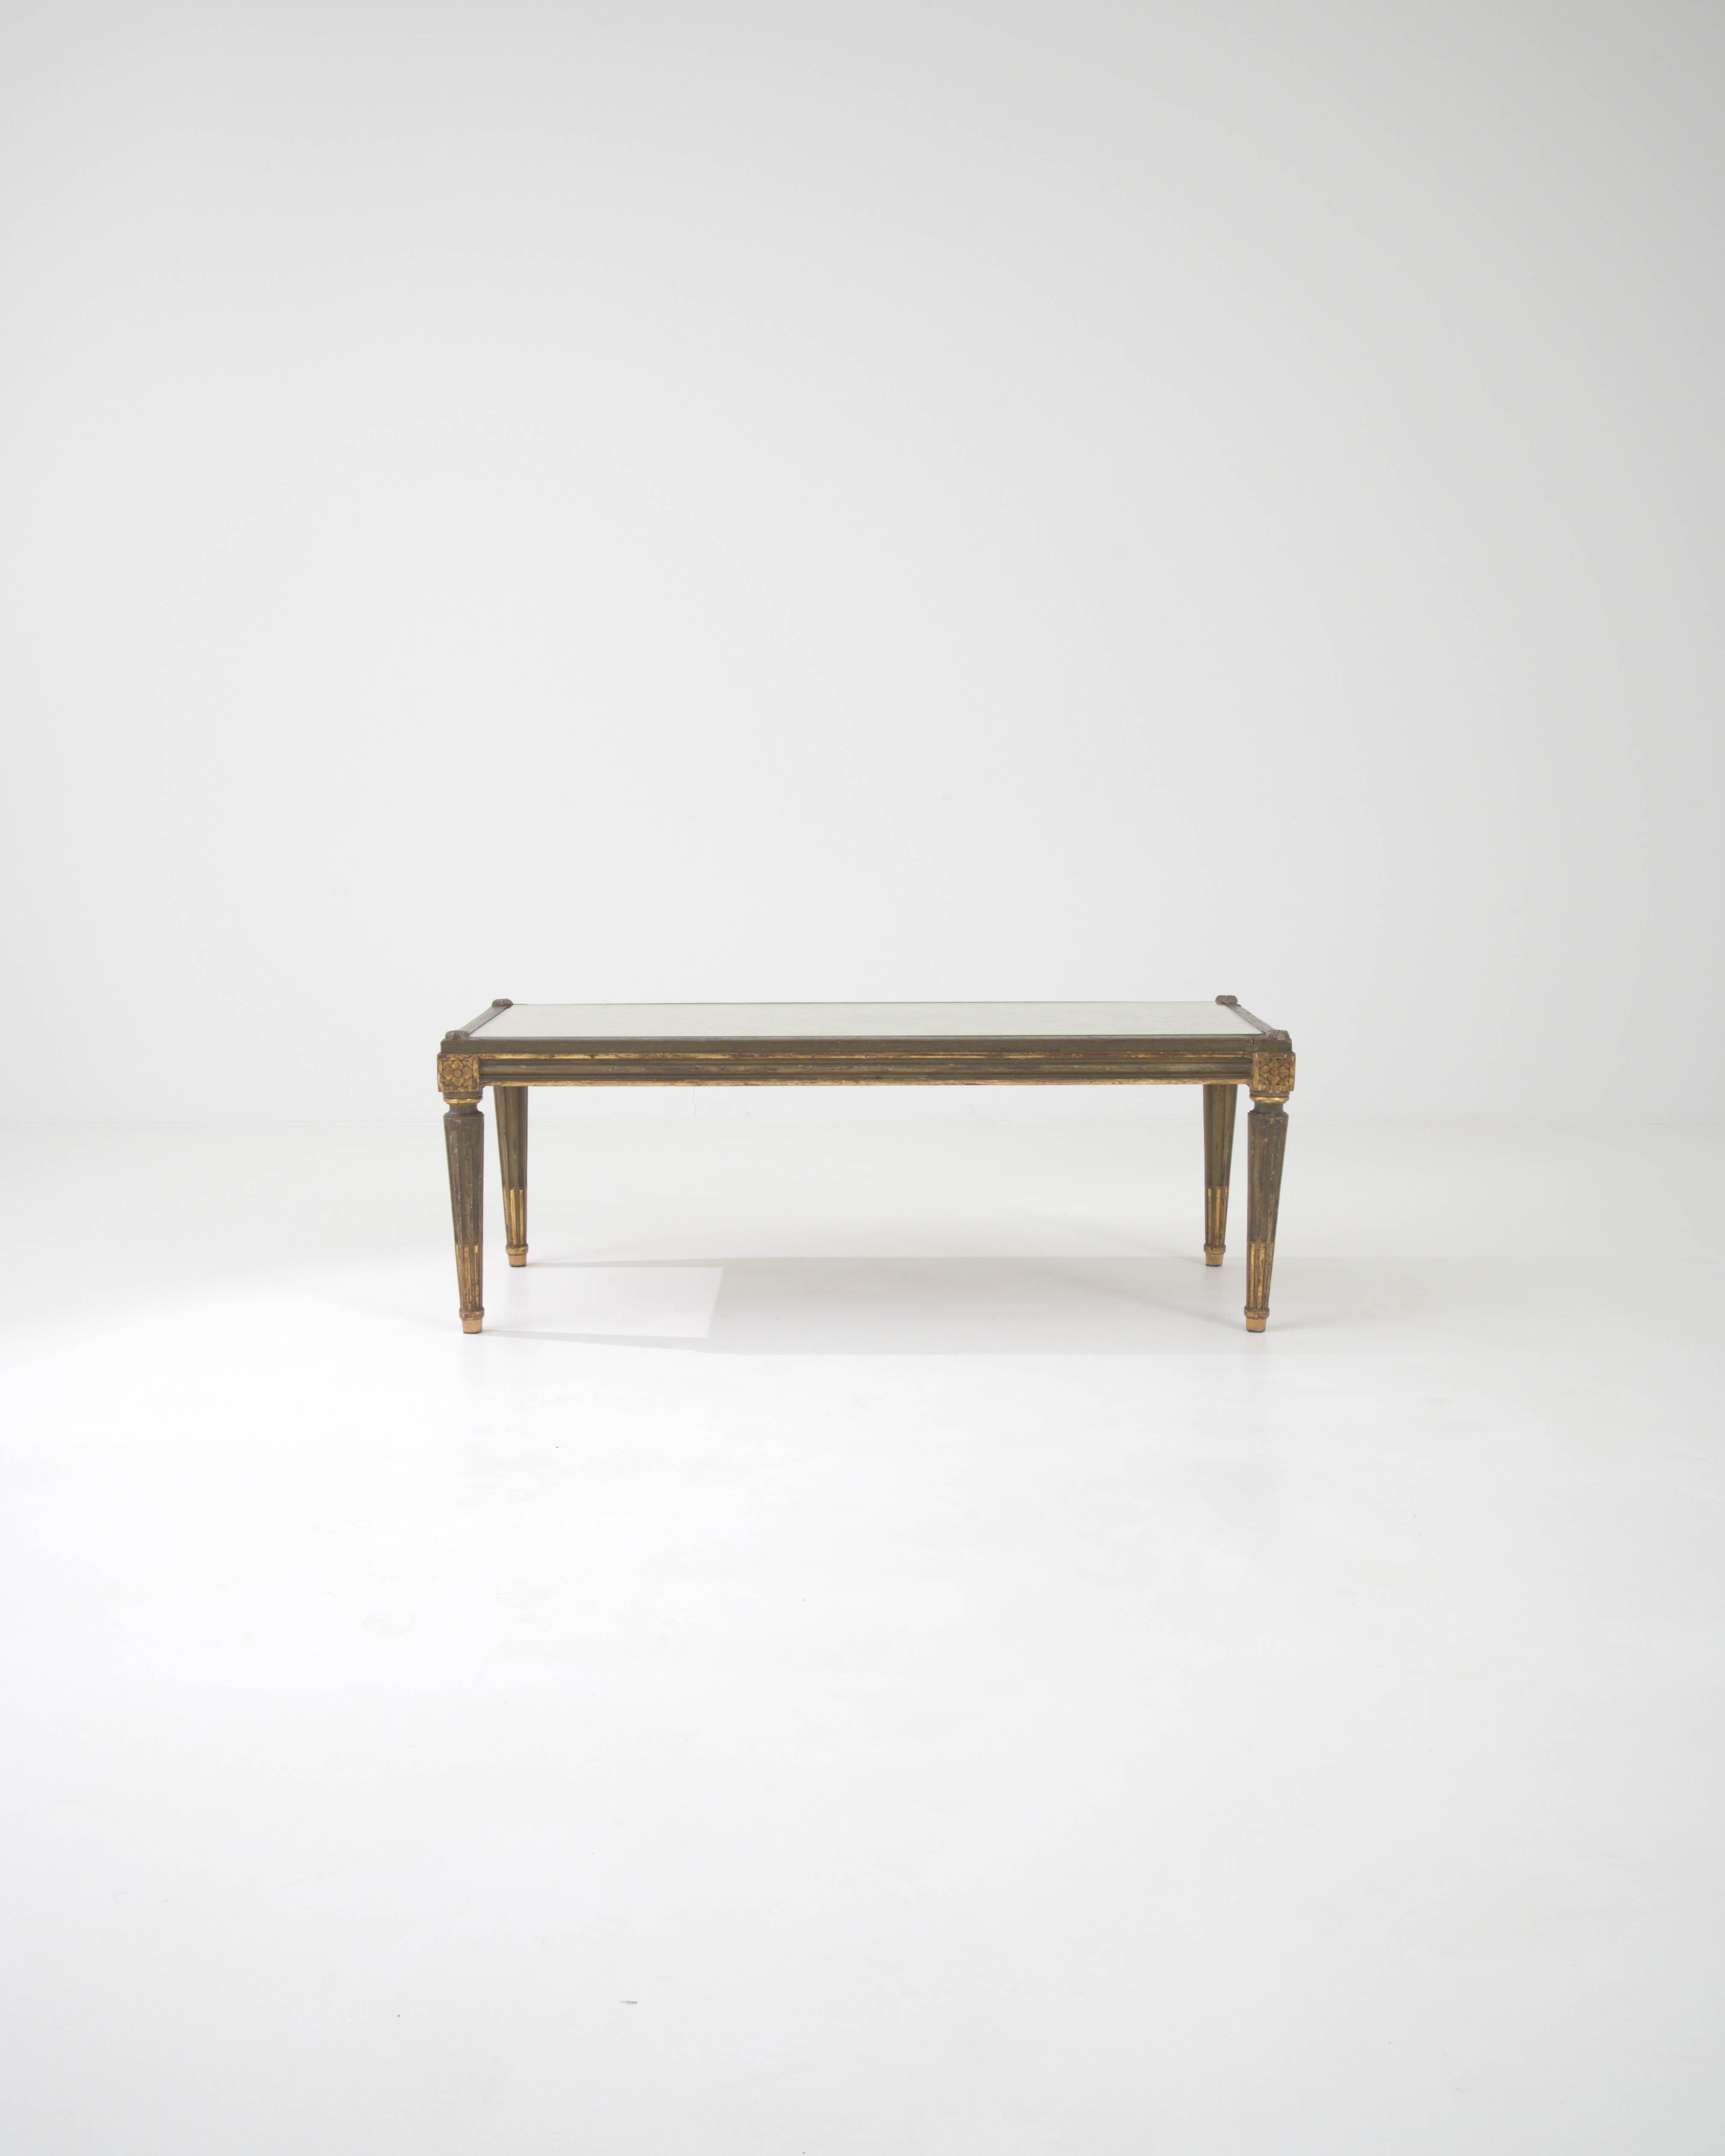 Présentant un chef-d'œuvre du design français du début du XXe siècle, cette exquise table basse en bois marie le charme rustique de sa structure en bois à l'élégance raffinée d'un plateau en verre. Les pieds de la table, ornés de délicates